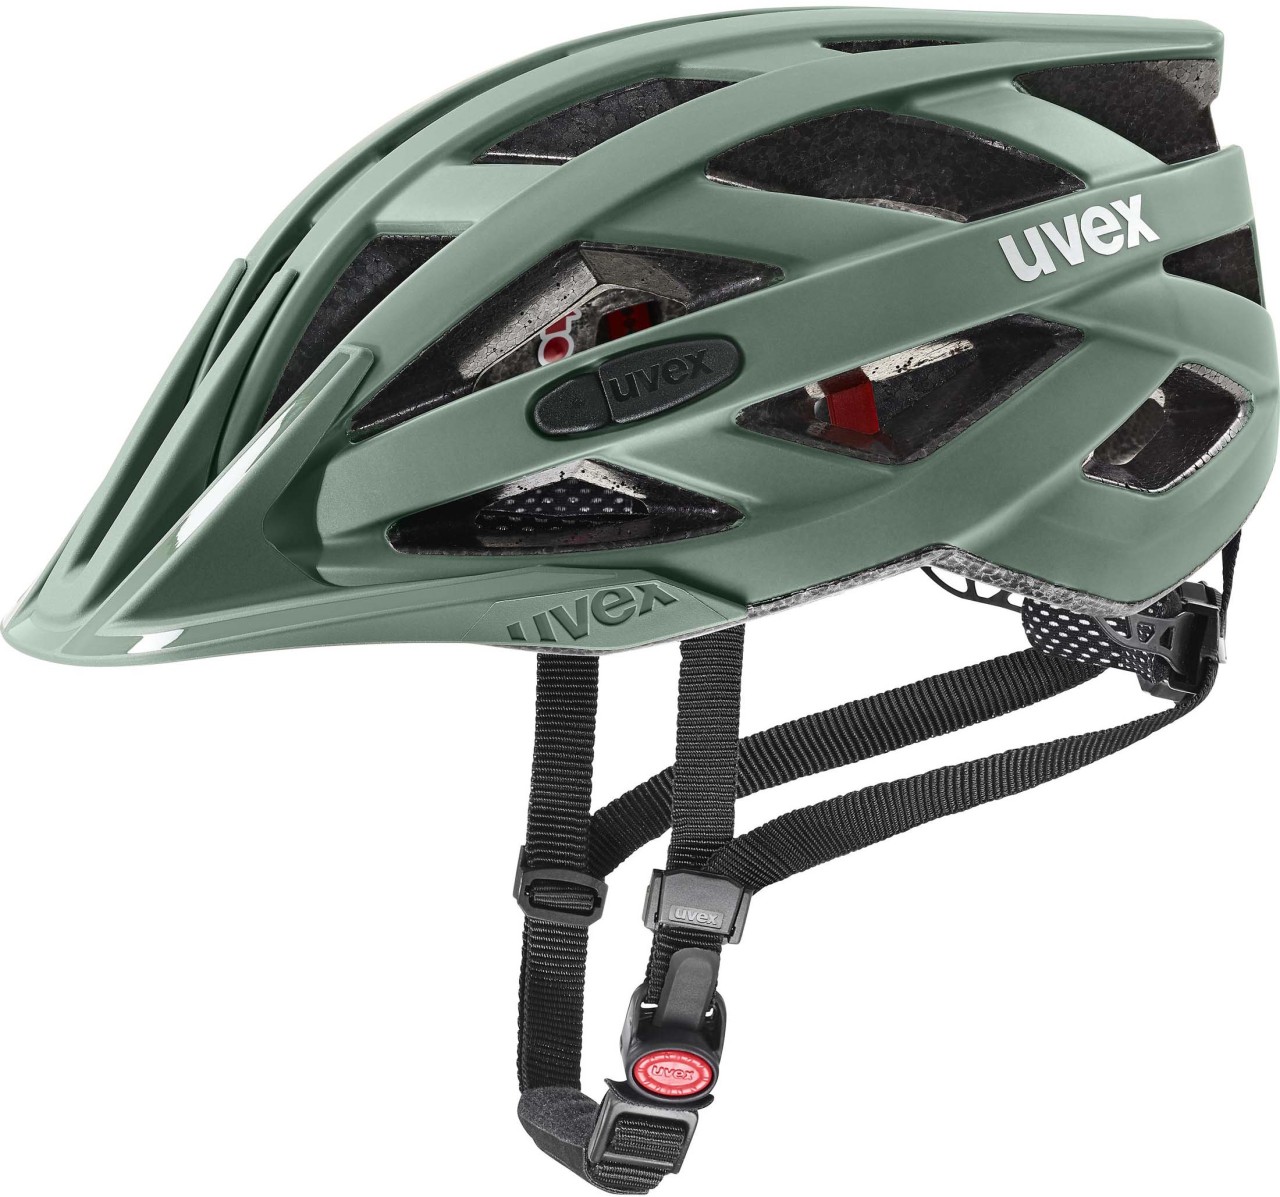 Uvex i-vo cc casque de vélo